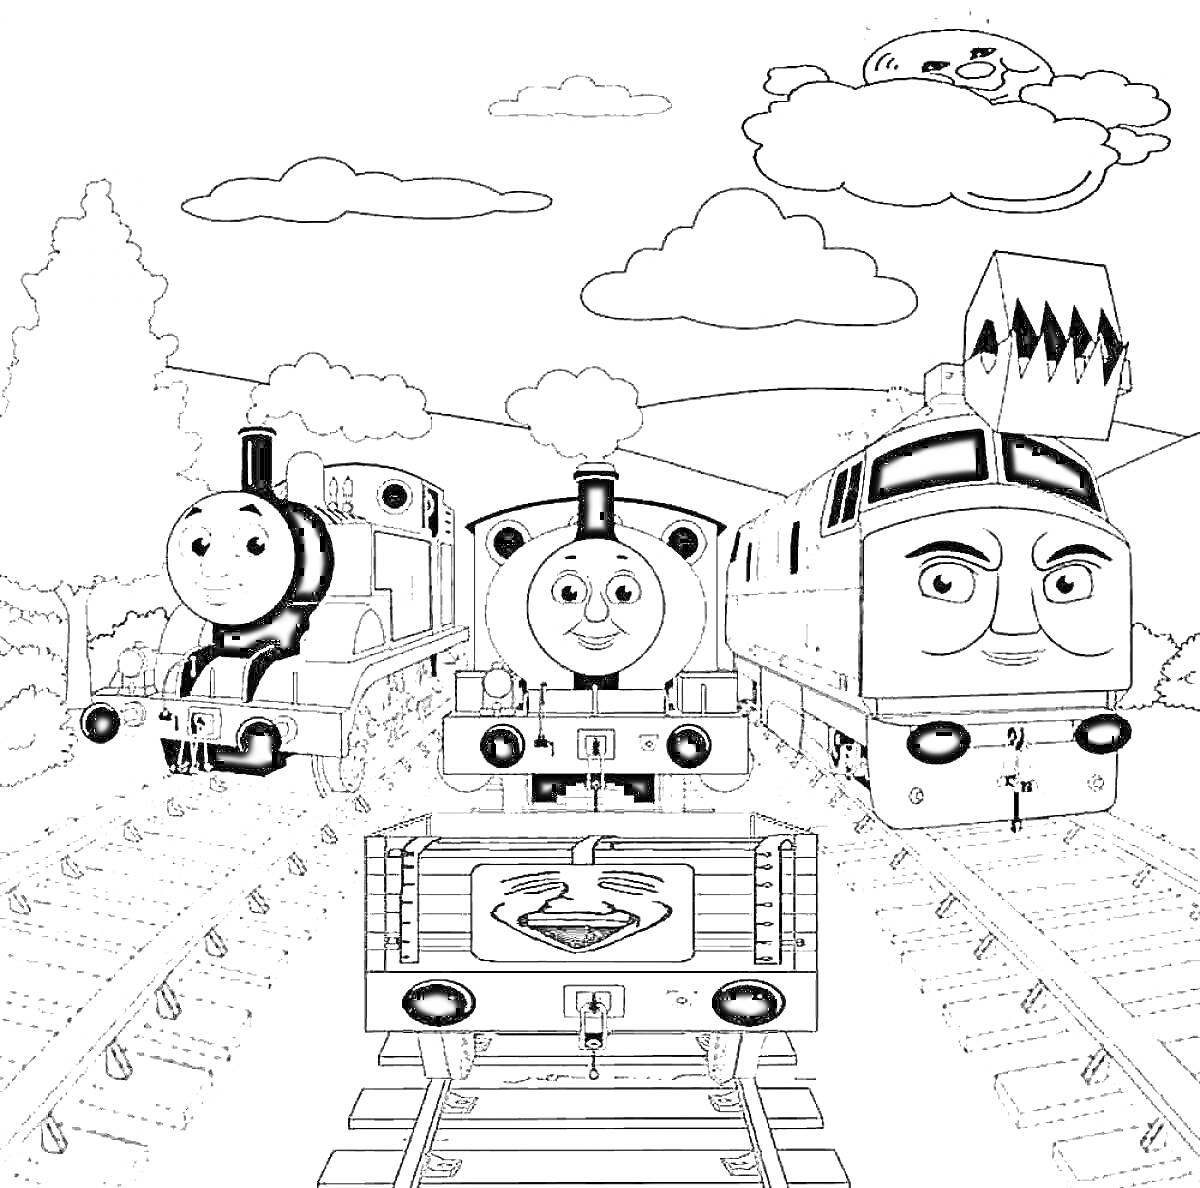 Раскраска Трое паровозиков Томас на железнодорожных путях с улыбающимся вагоном и улыбающимся облаком